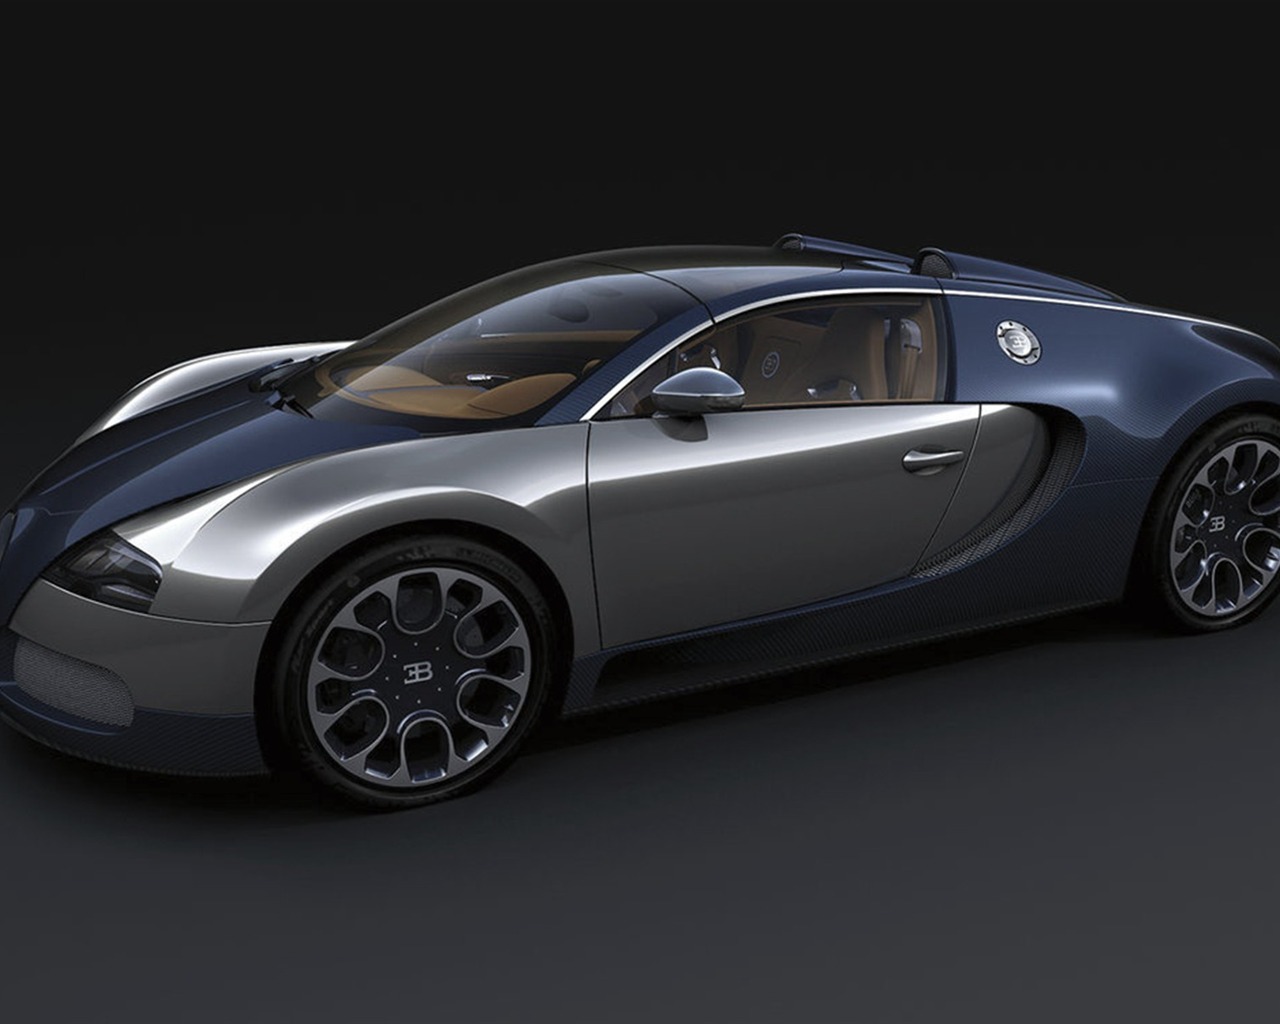 Bugatti Veyron Fondos de disco (2) #17 - 1280x1024